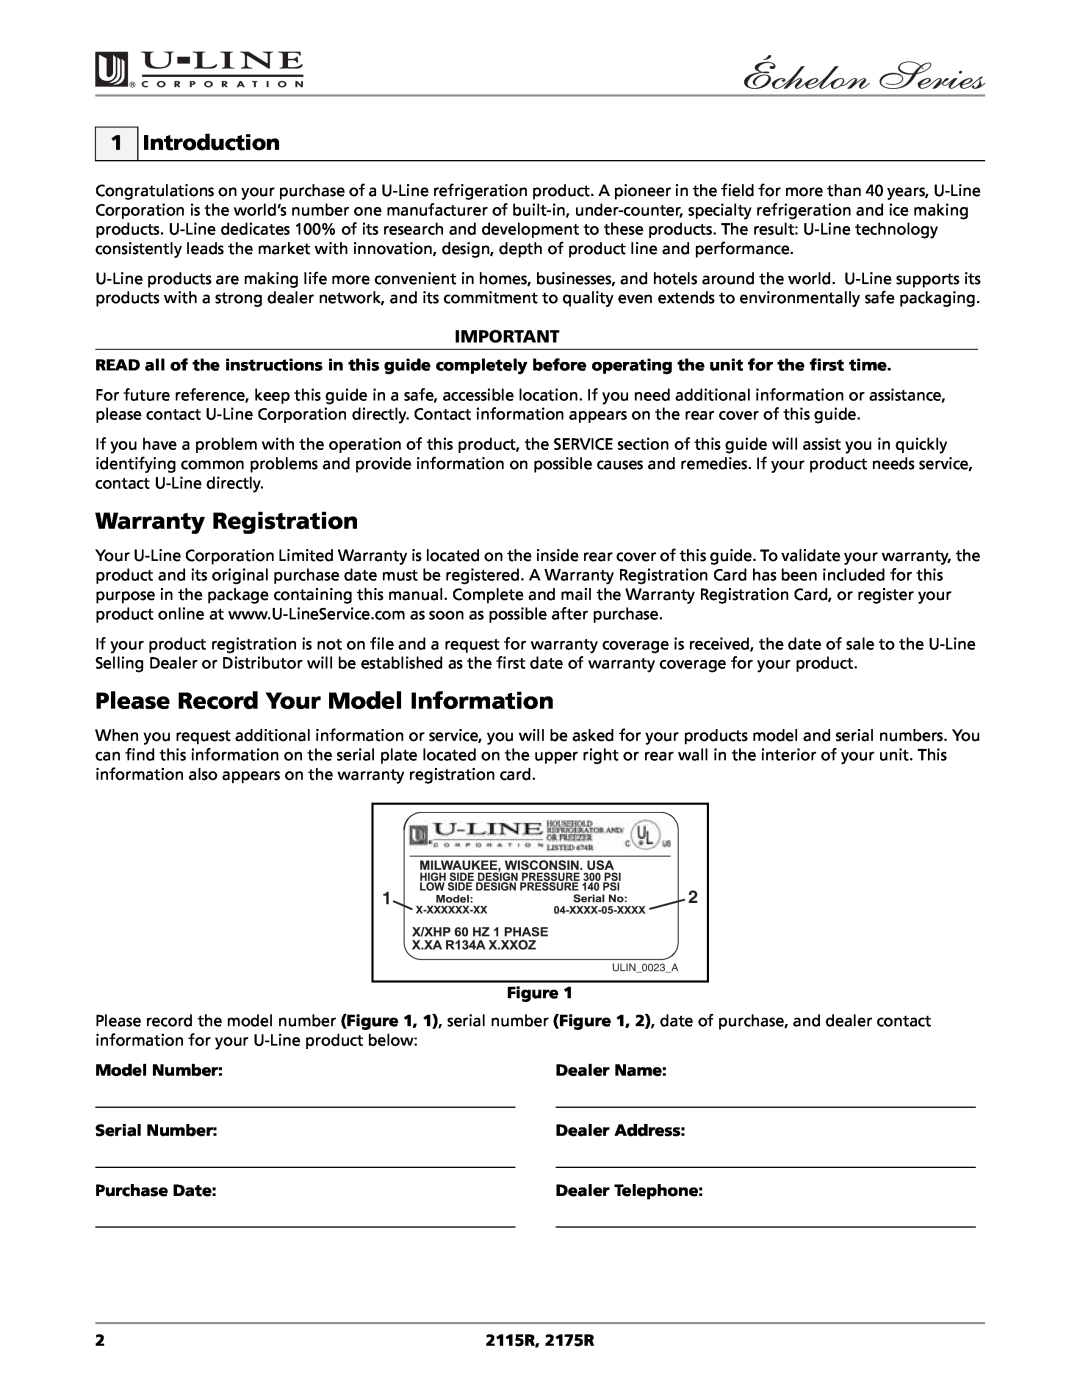 U-Line 2115R manual Warranty Registration, Please Record Your Model Information, Introduction, Model Number, Dealer Name 